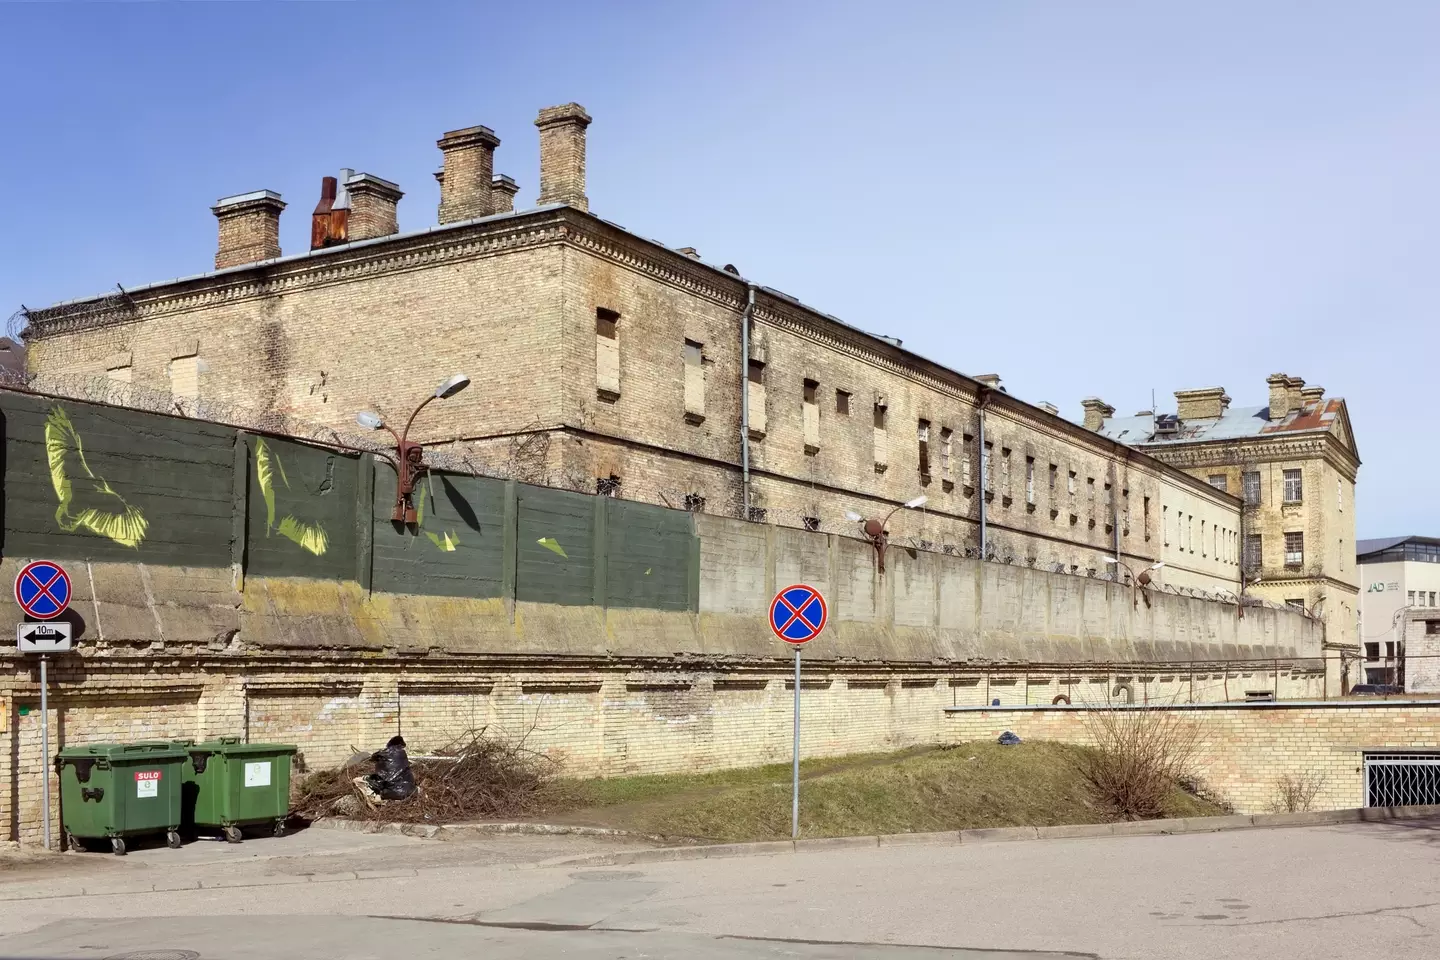 Lukiškės Prison has a famously dark history.